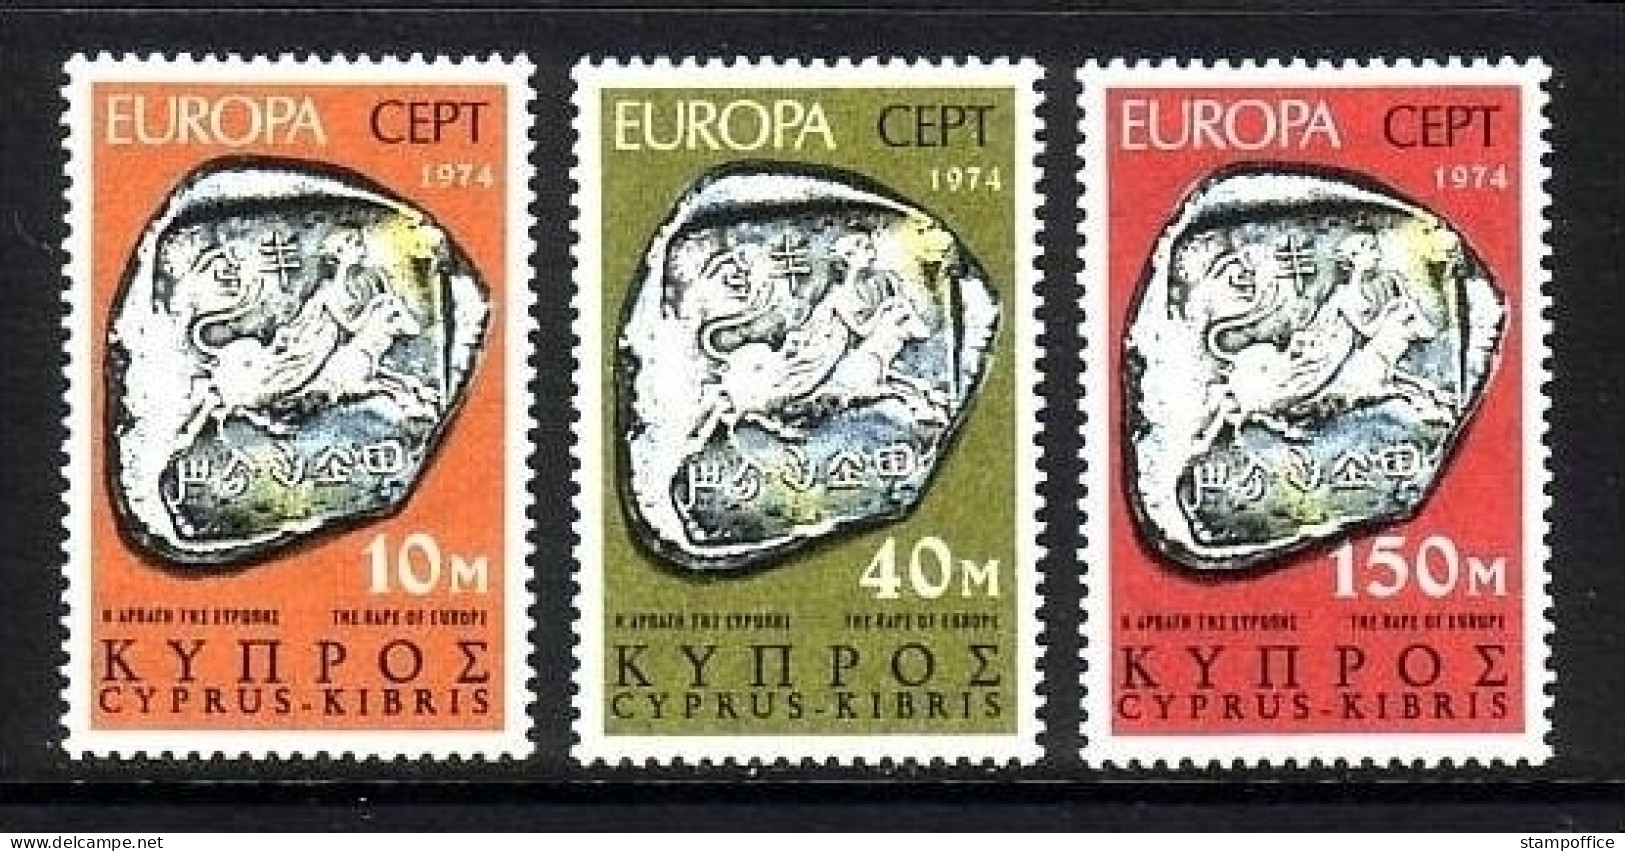 ZYPERN MI-NR. 409-411 POSTFRISCH(MINT) EUROPA 1974 SKULPTUREN - 1974